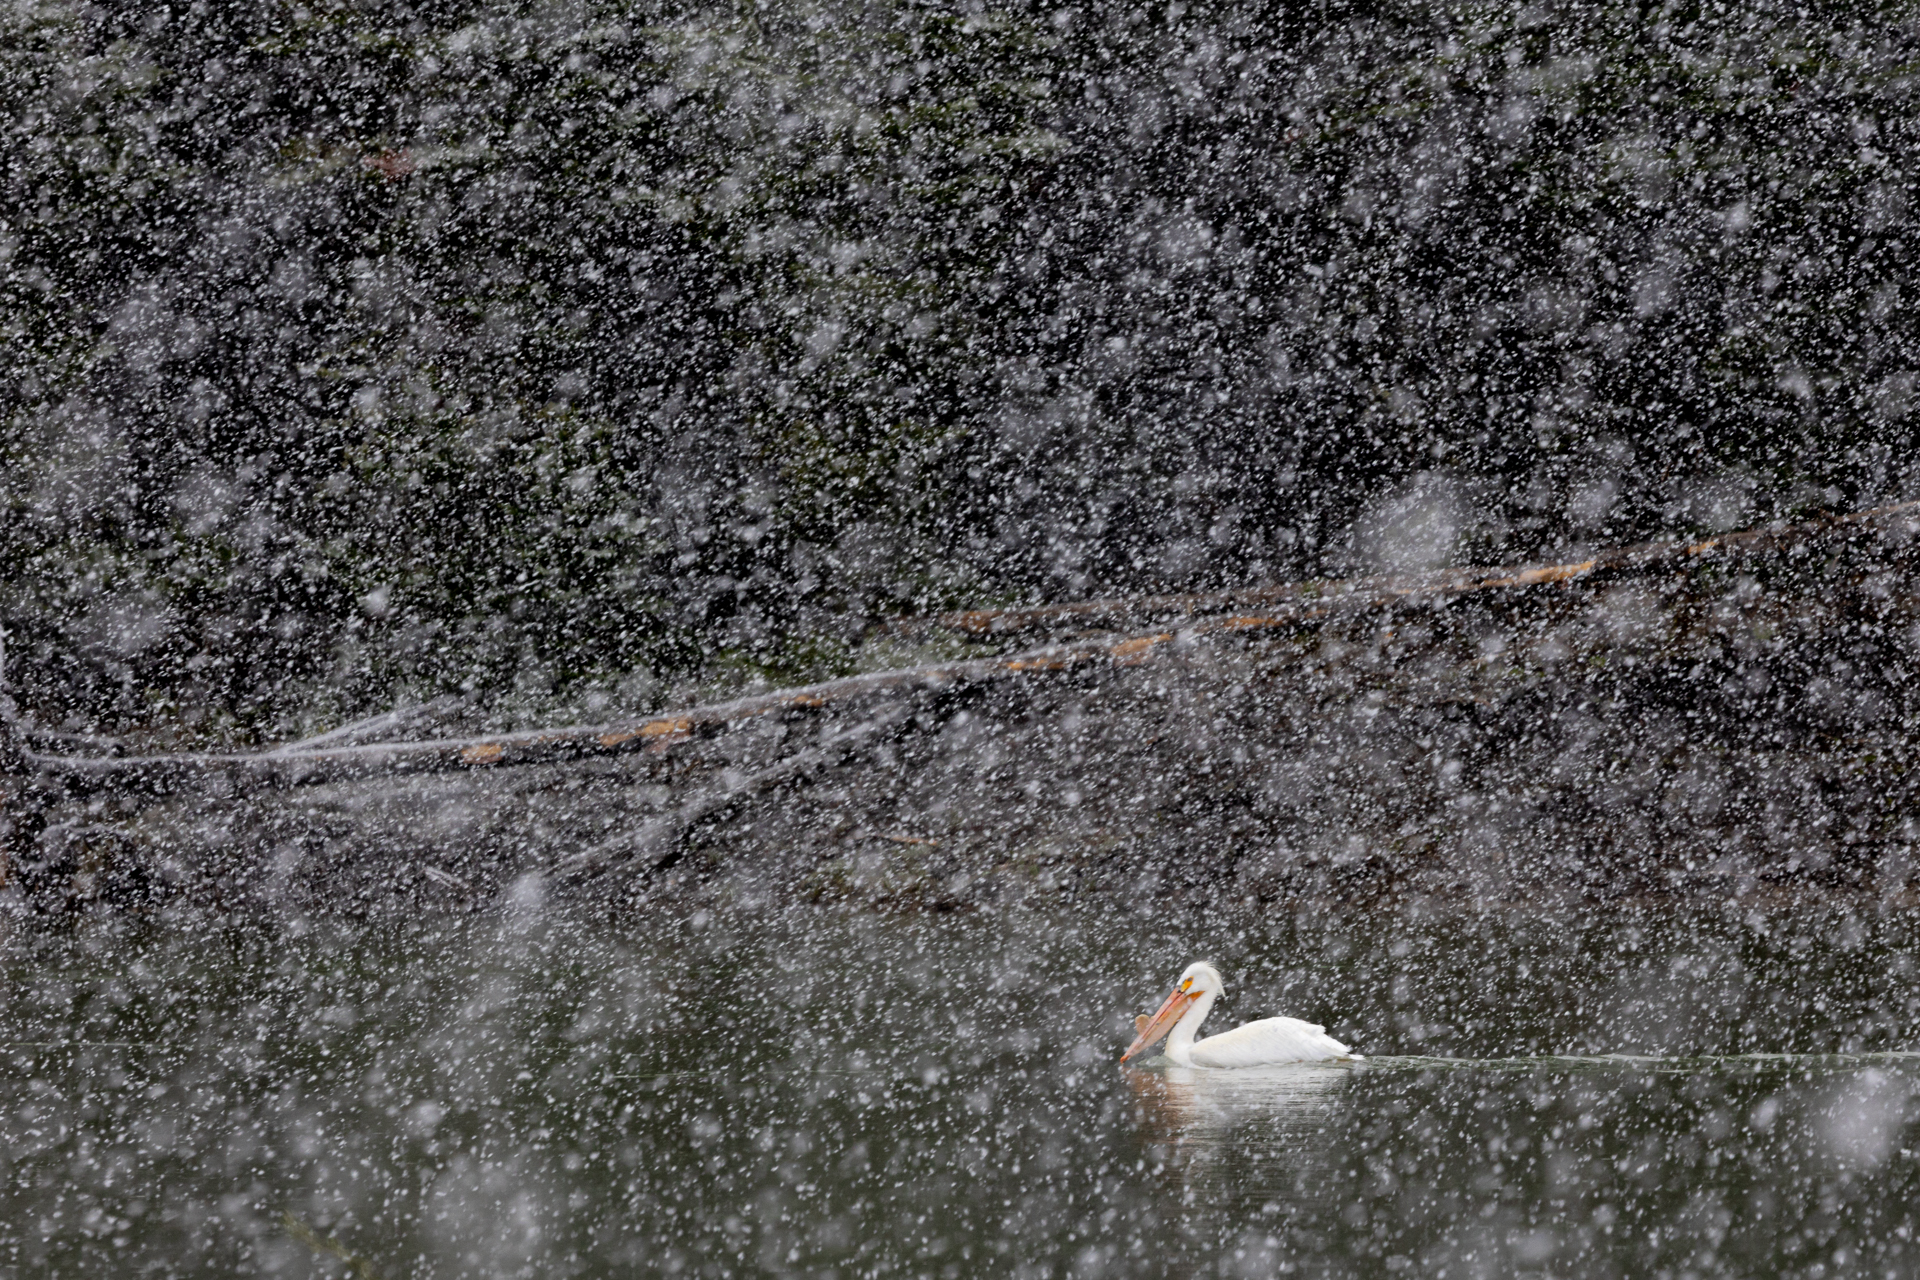 Pelican in the blizzard...